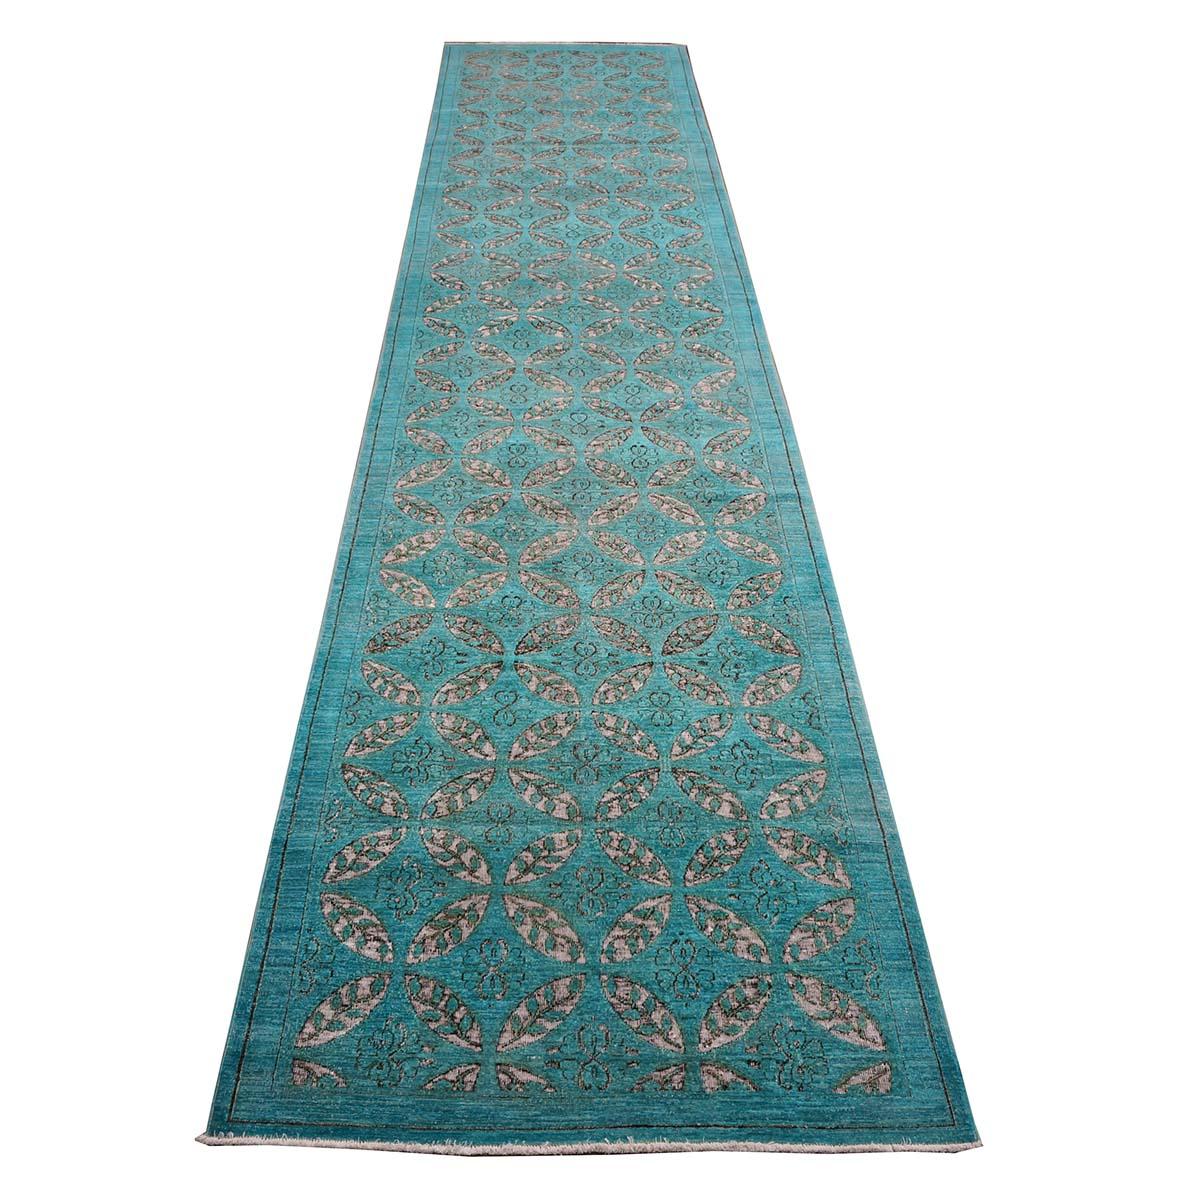 Ashly Fine Rugs présente un nouveau tapis afghan moderne et vieilli. Ces tapis ont été surteints et vieillis avec un design personnalisé pour leur donner un aspect antique, tout en leur conférant un aspect moderne. Cette pièce a été surteinte d'une